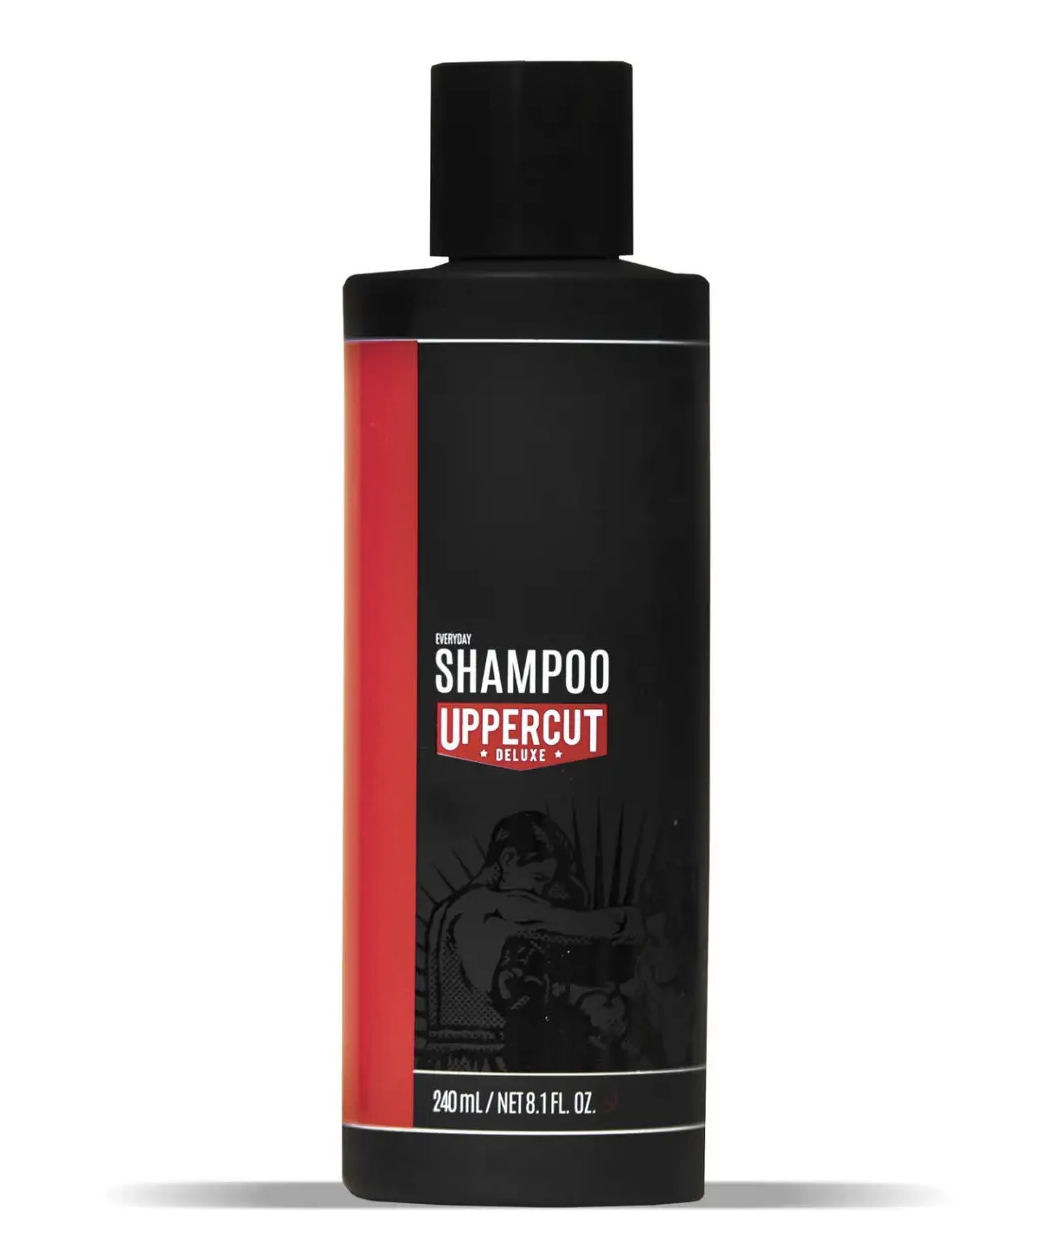 Uppercut Deluxe Everyday Shampoo - Шампунь для ежедневного использования 240 мл